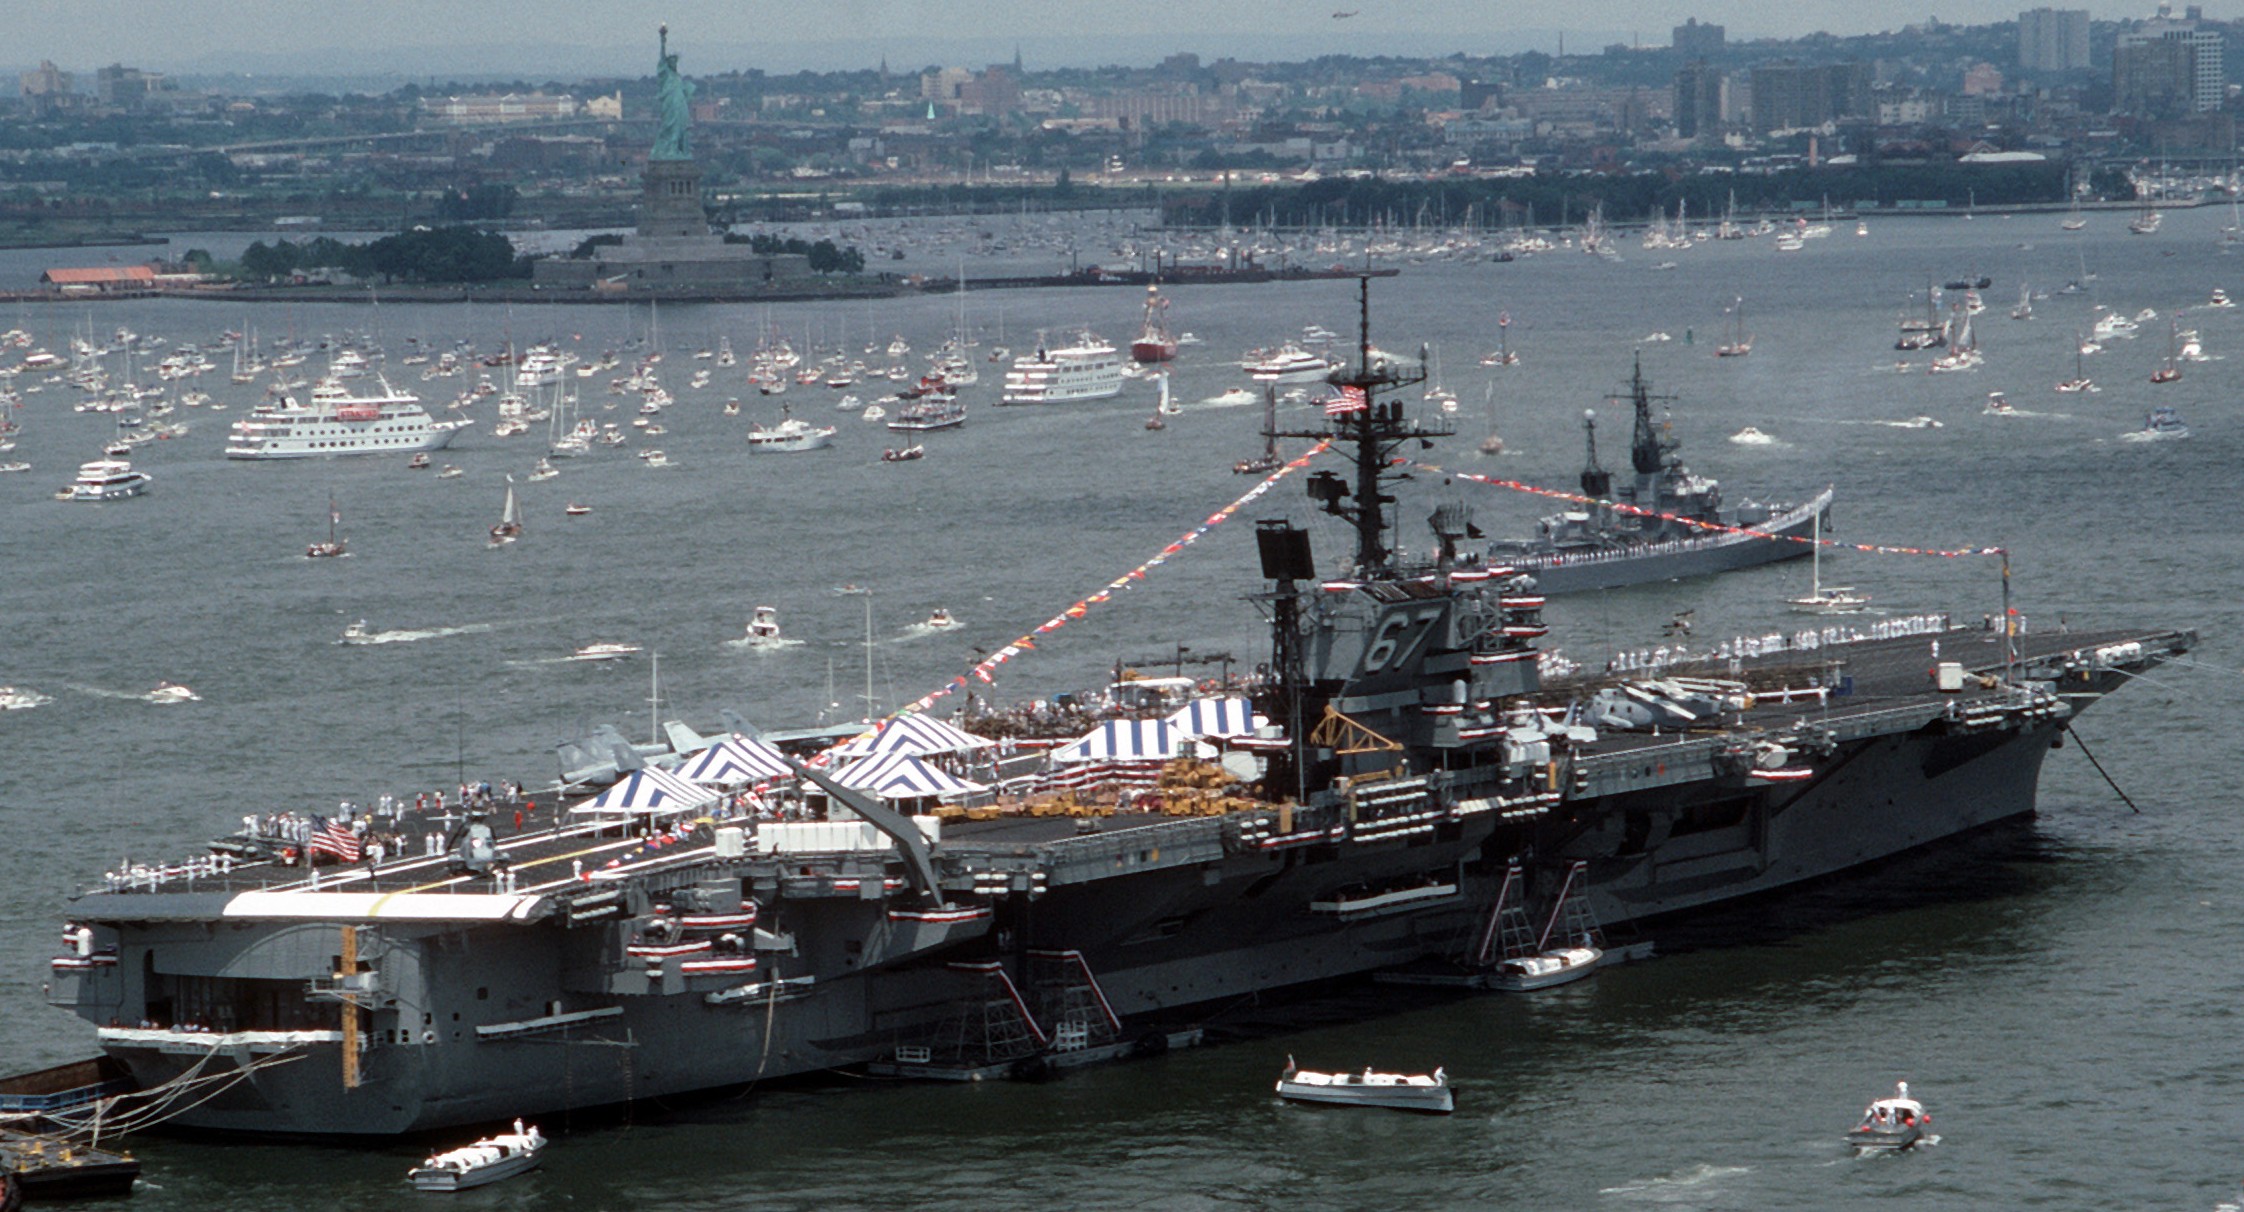 cv-67 uss john f. kennedy aircraft carrier international naval review new york 1986 91